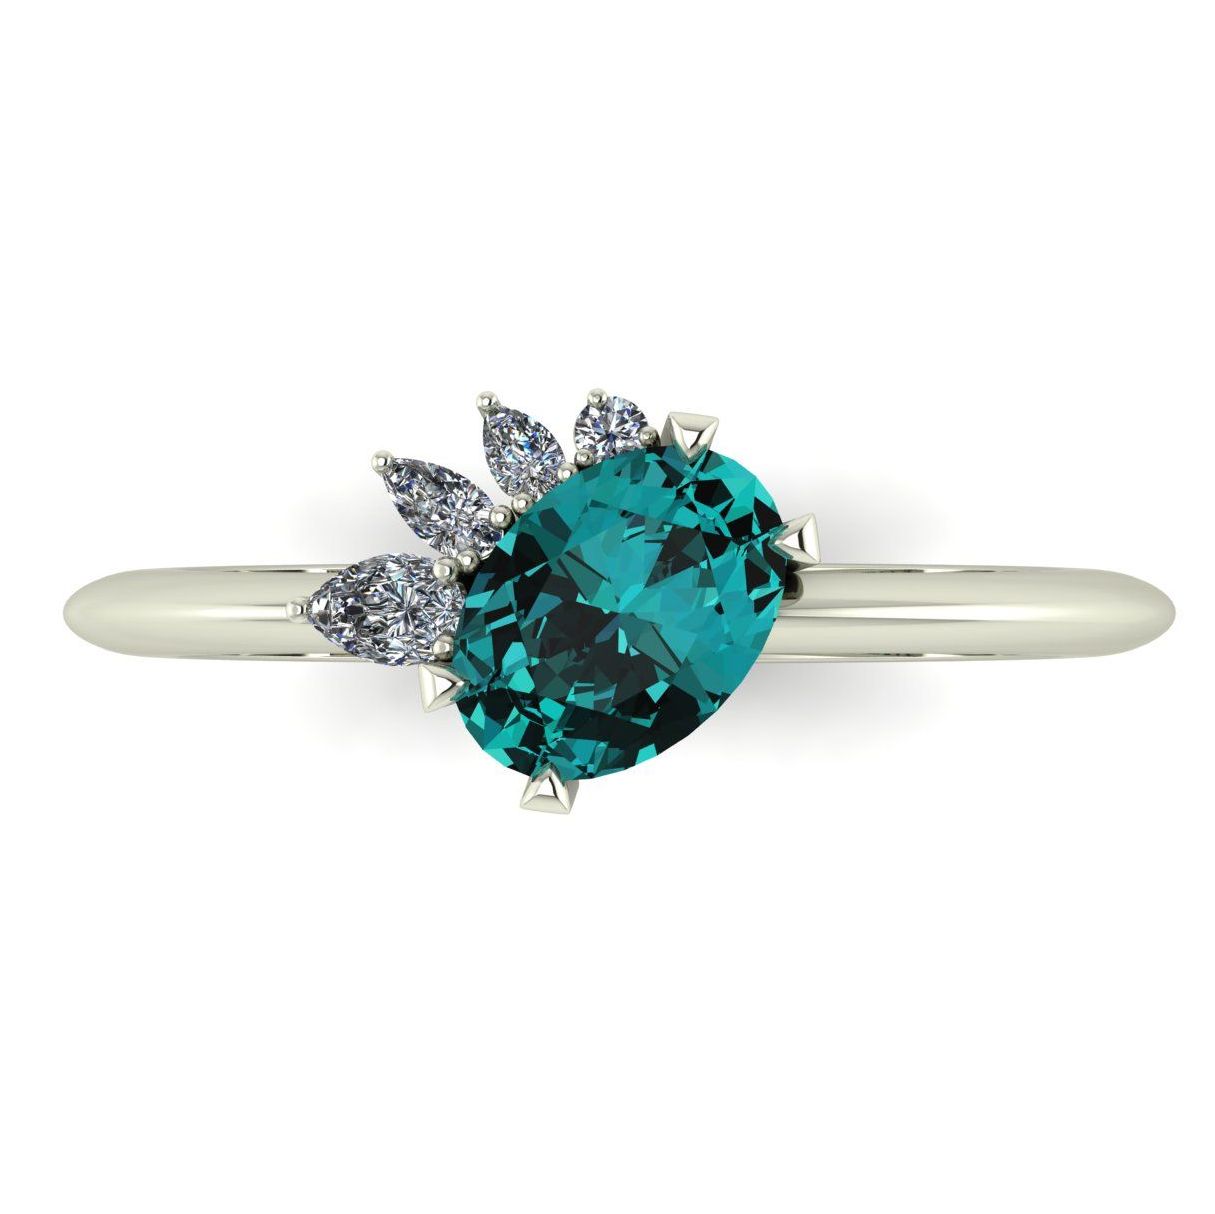 The Selene Engagement Ring